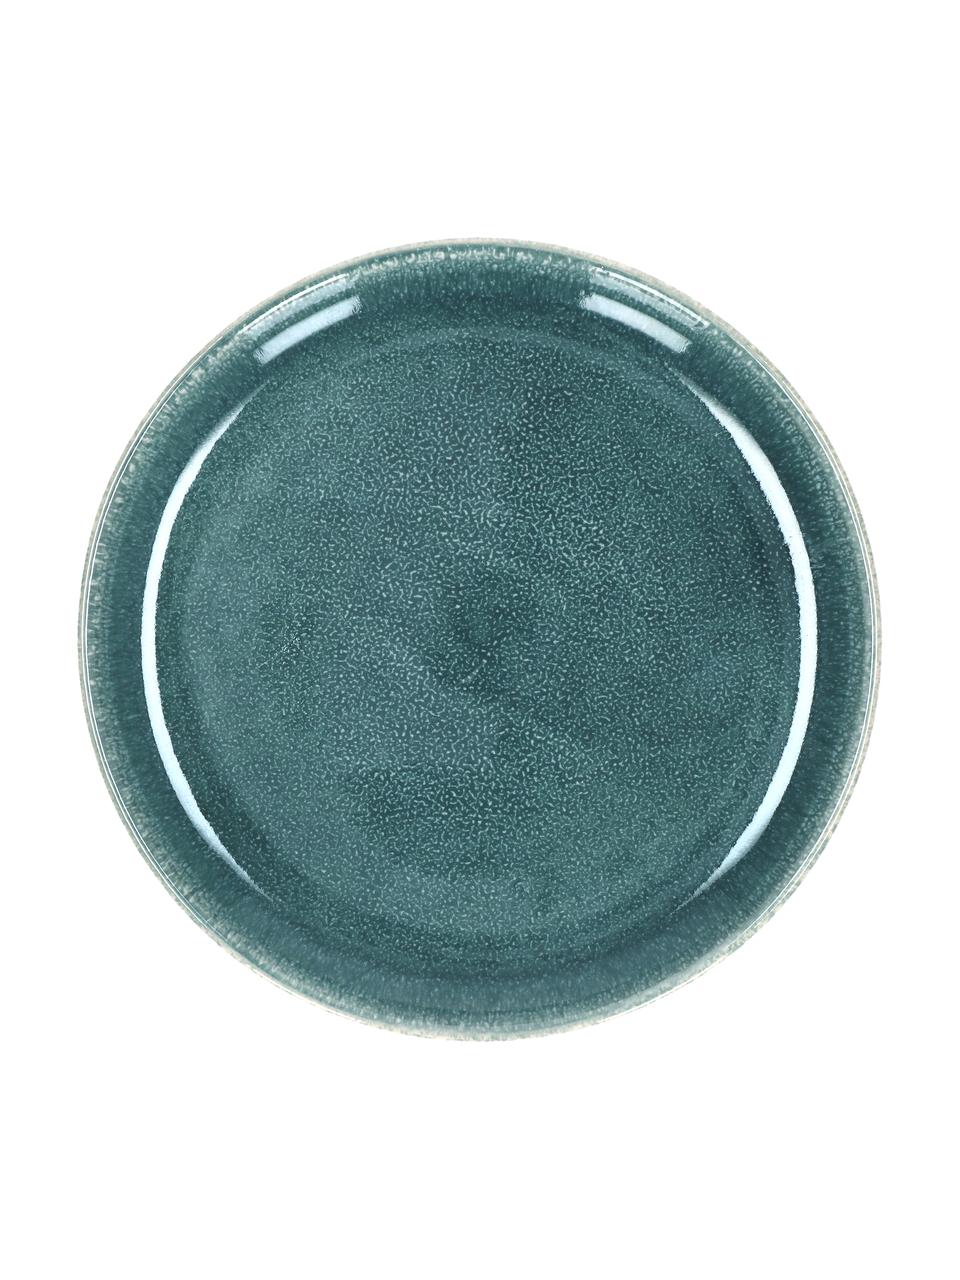 Platos postre de gres Audrey, 2 uds., Gres, Verde azulado, Ø 20 cm